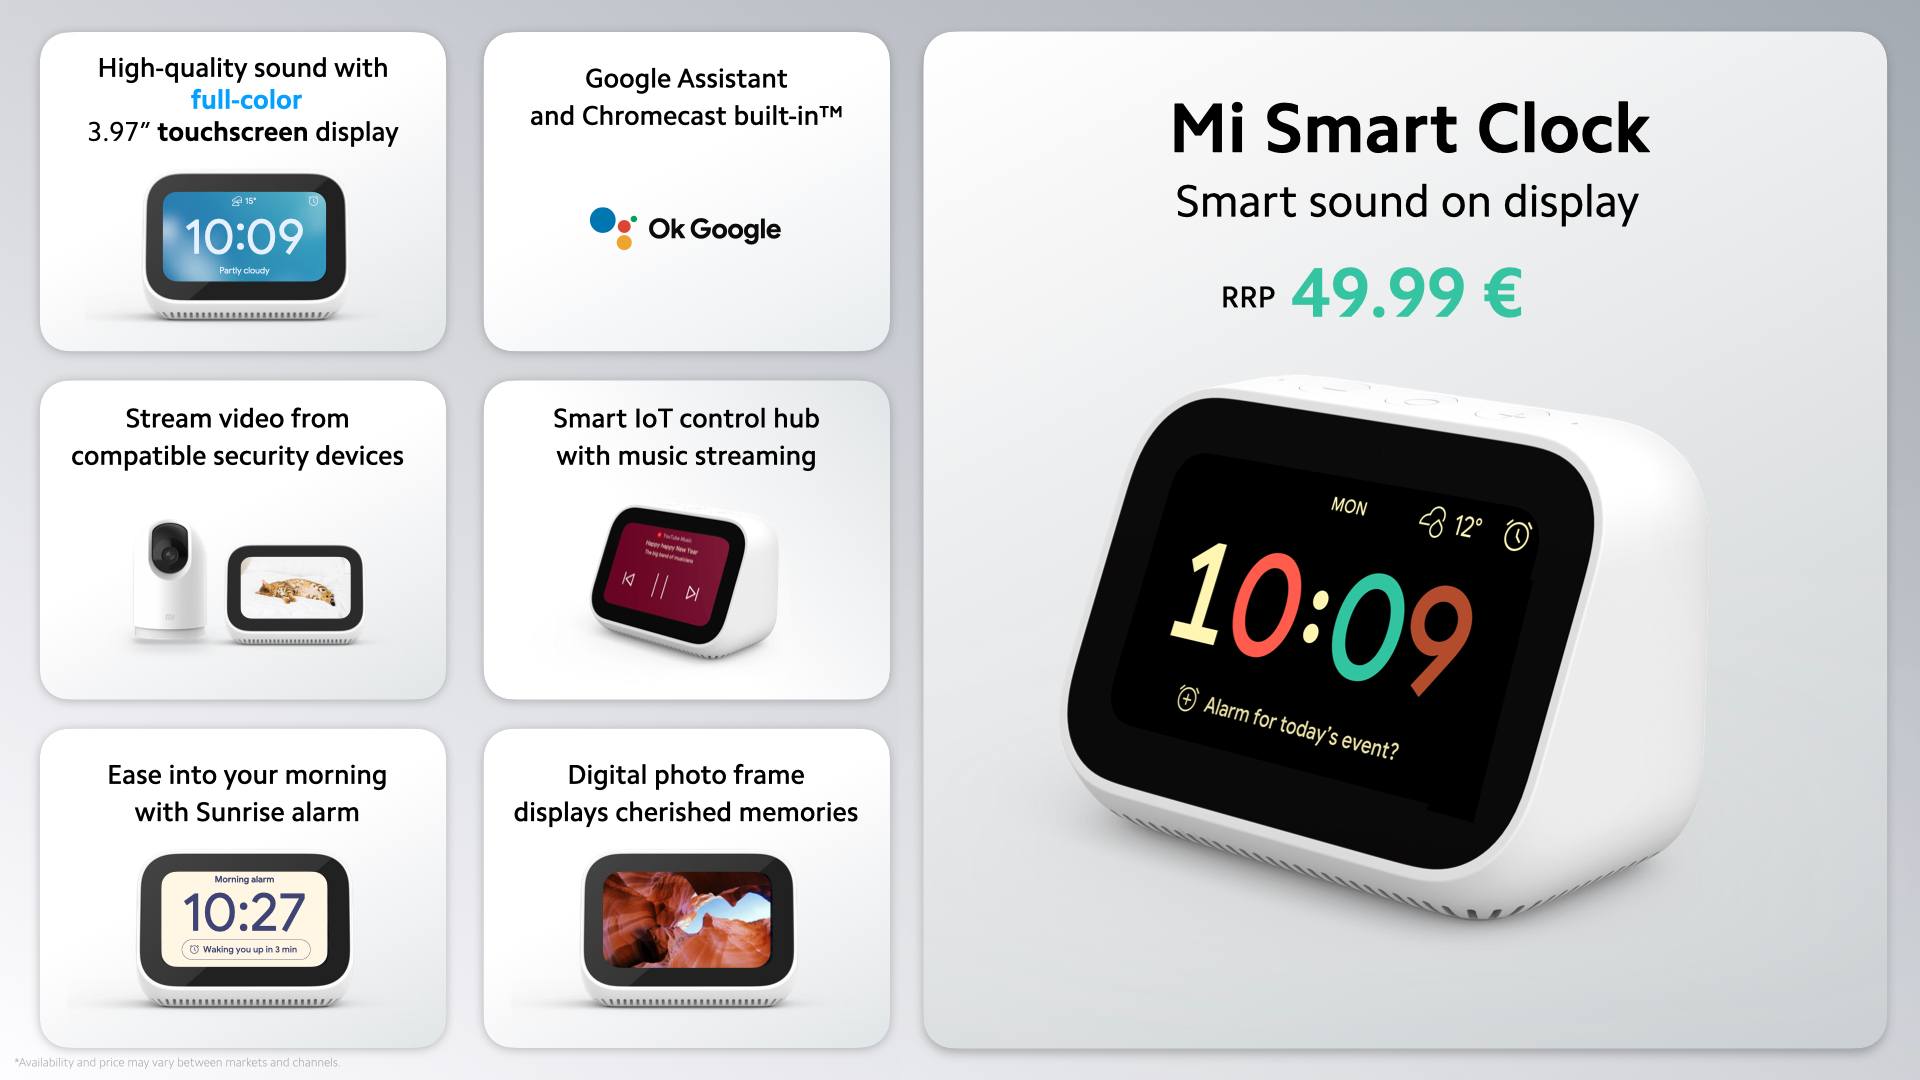 Xiaomi представила Mi Smart Clock: умный дисплей со встроенным Google Assistant и Chromecast за 49 евро